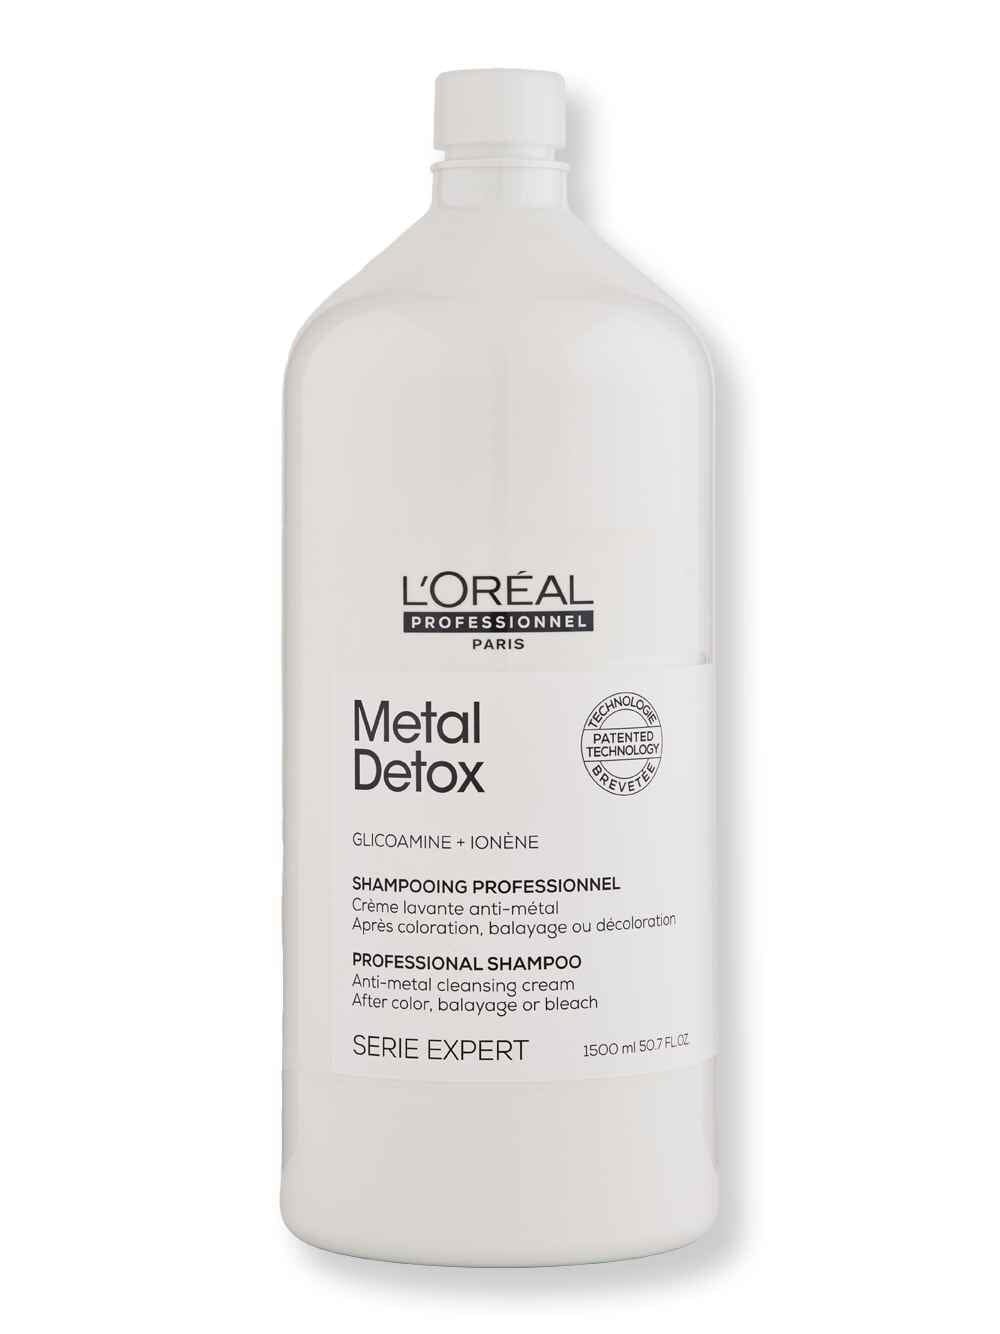 L'Oreal Professionnel L'Oreal Professionnel Metal Detox Anti-Metal Cleansing Cream Shampoo 50.7 fl oz1500 ml Shampoos 